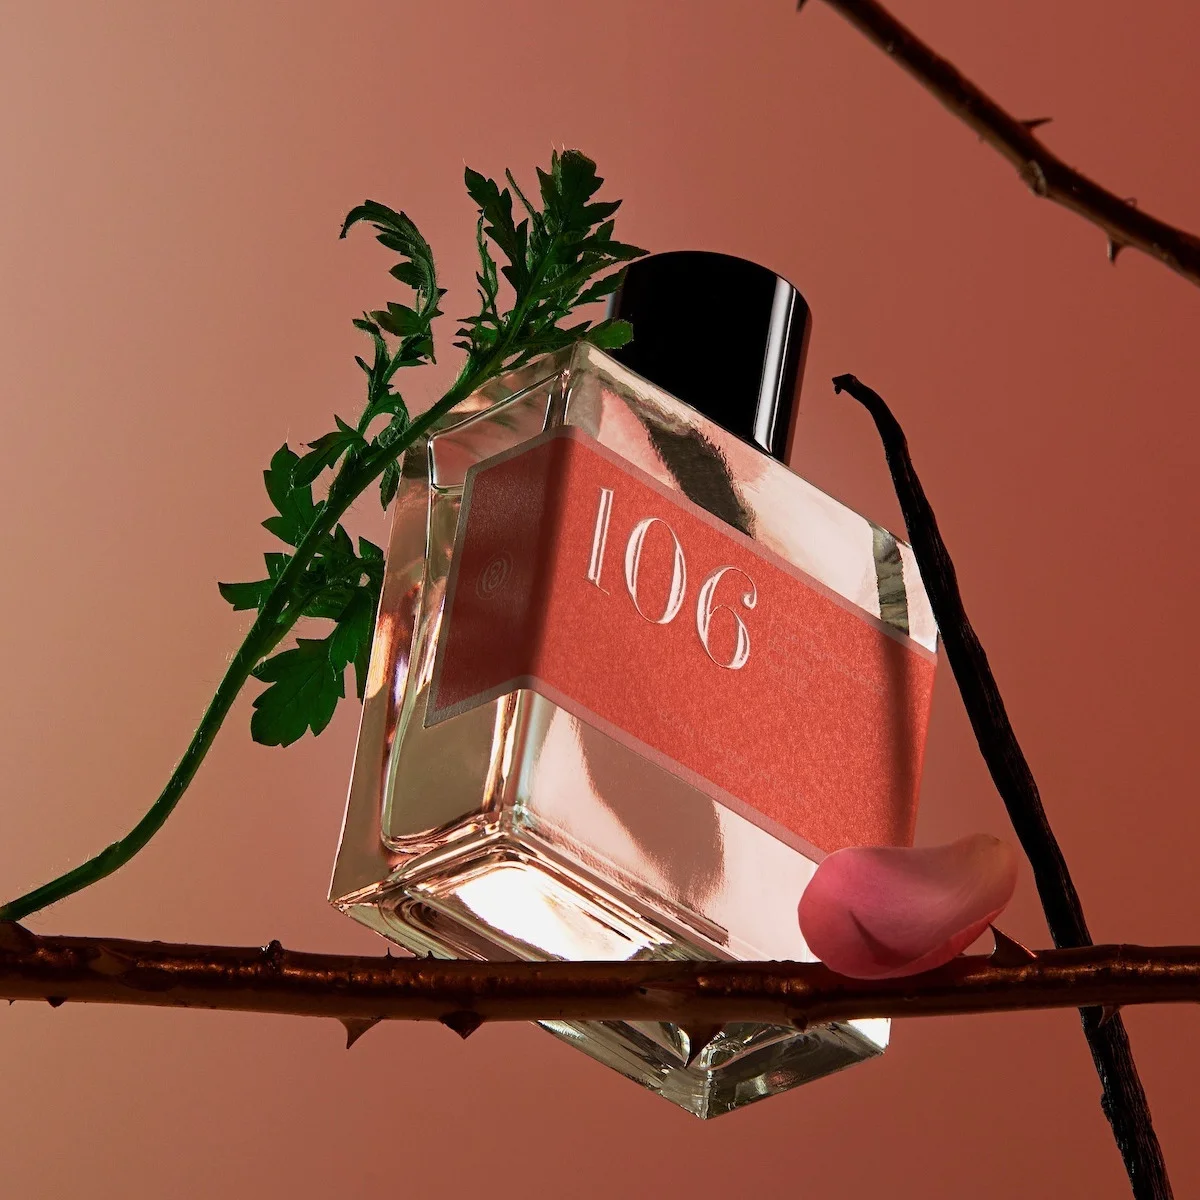 アップサイクルされたローズを使用【ボン パフューマー】新作は、パリの庭園に咲くローズ・ド・メ（5月のバラ）をイメージ